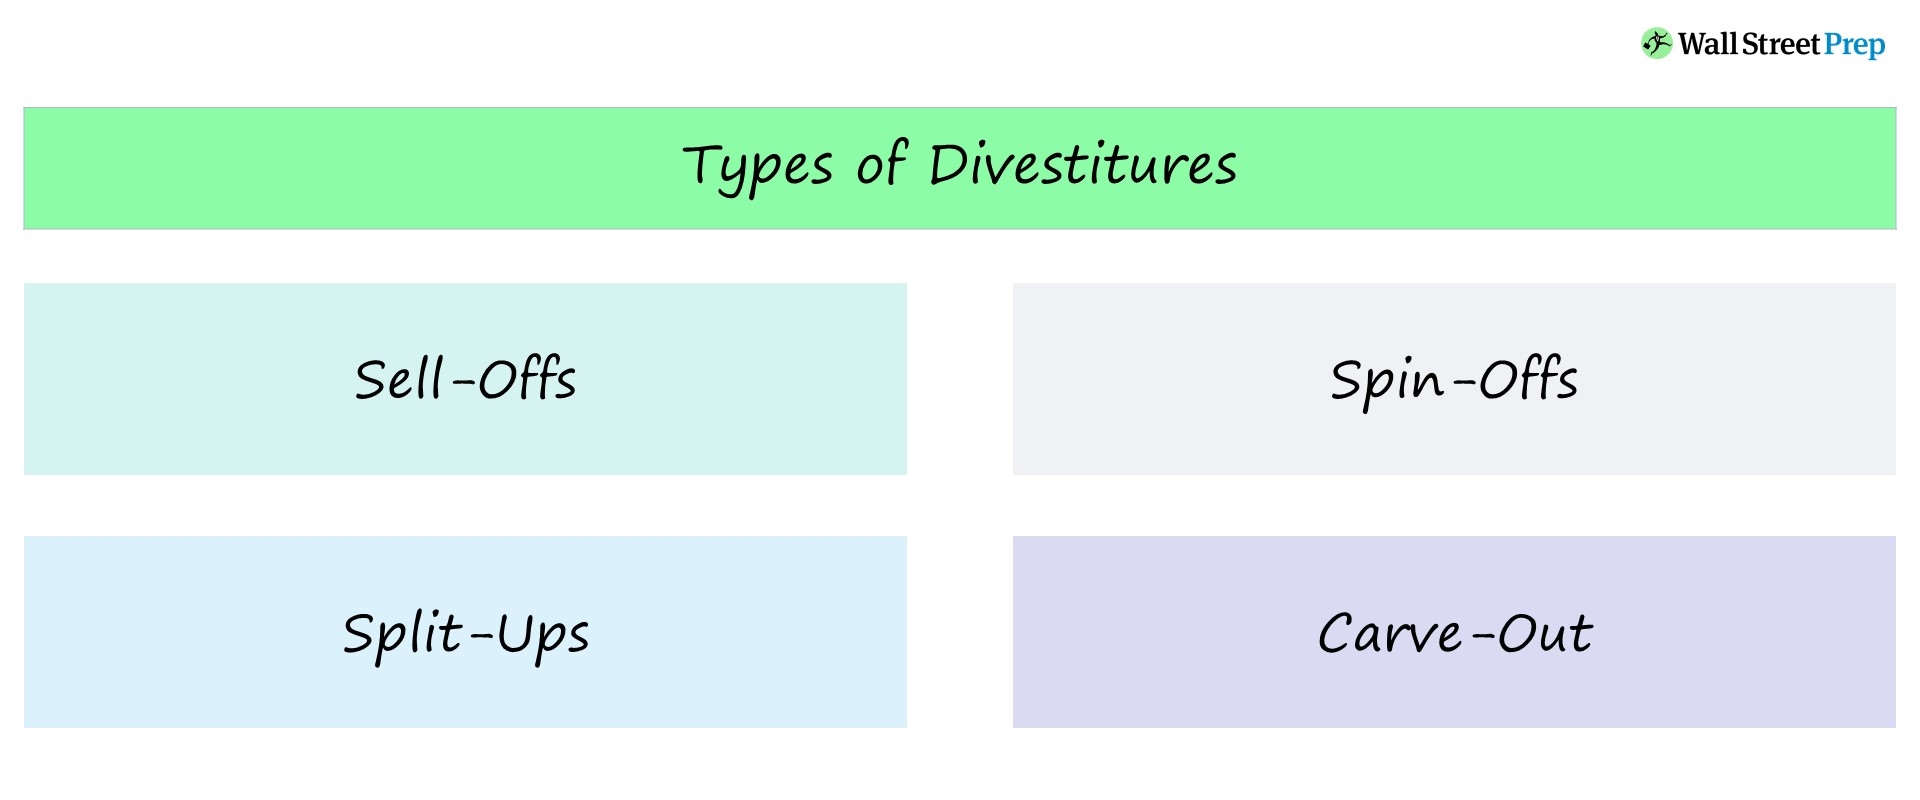 Desinversión | Definición + ejemplos de fusiones y adquisiciones